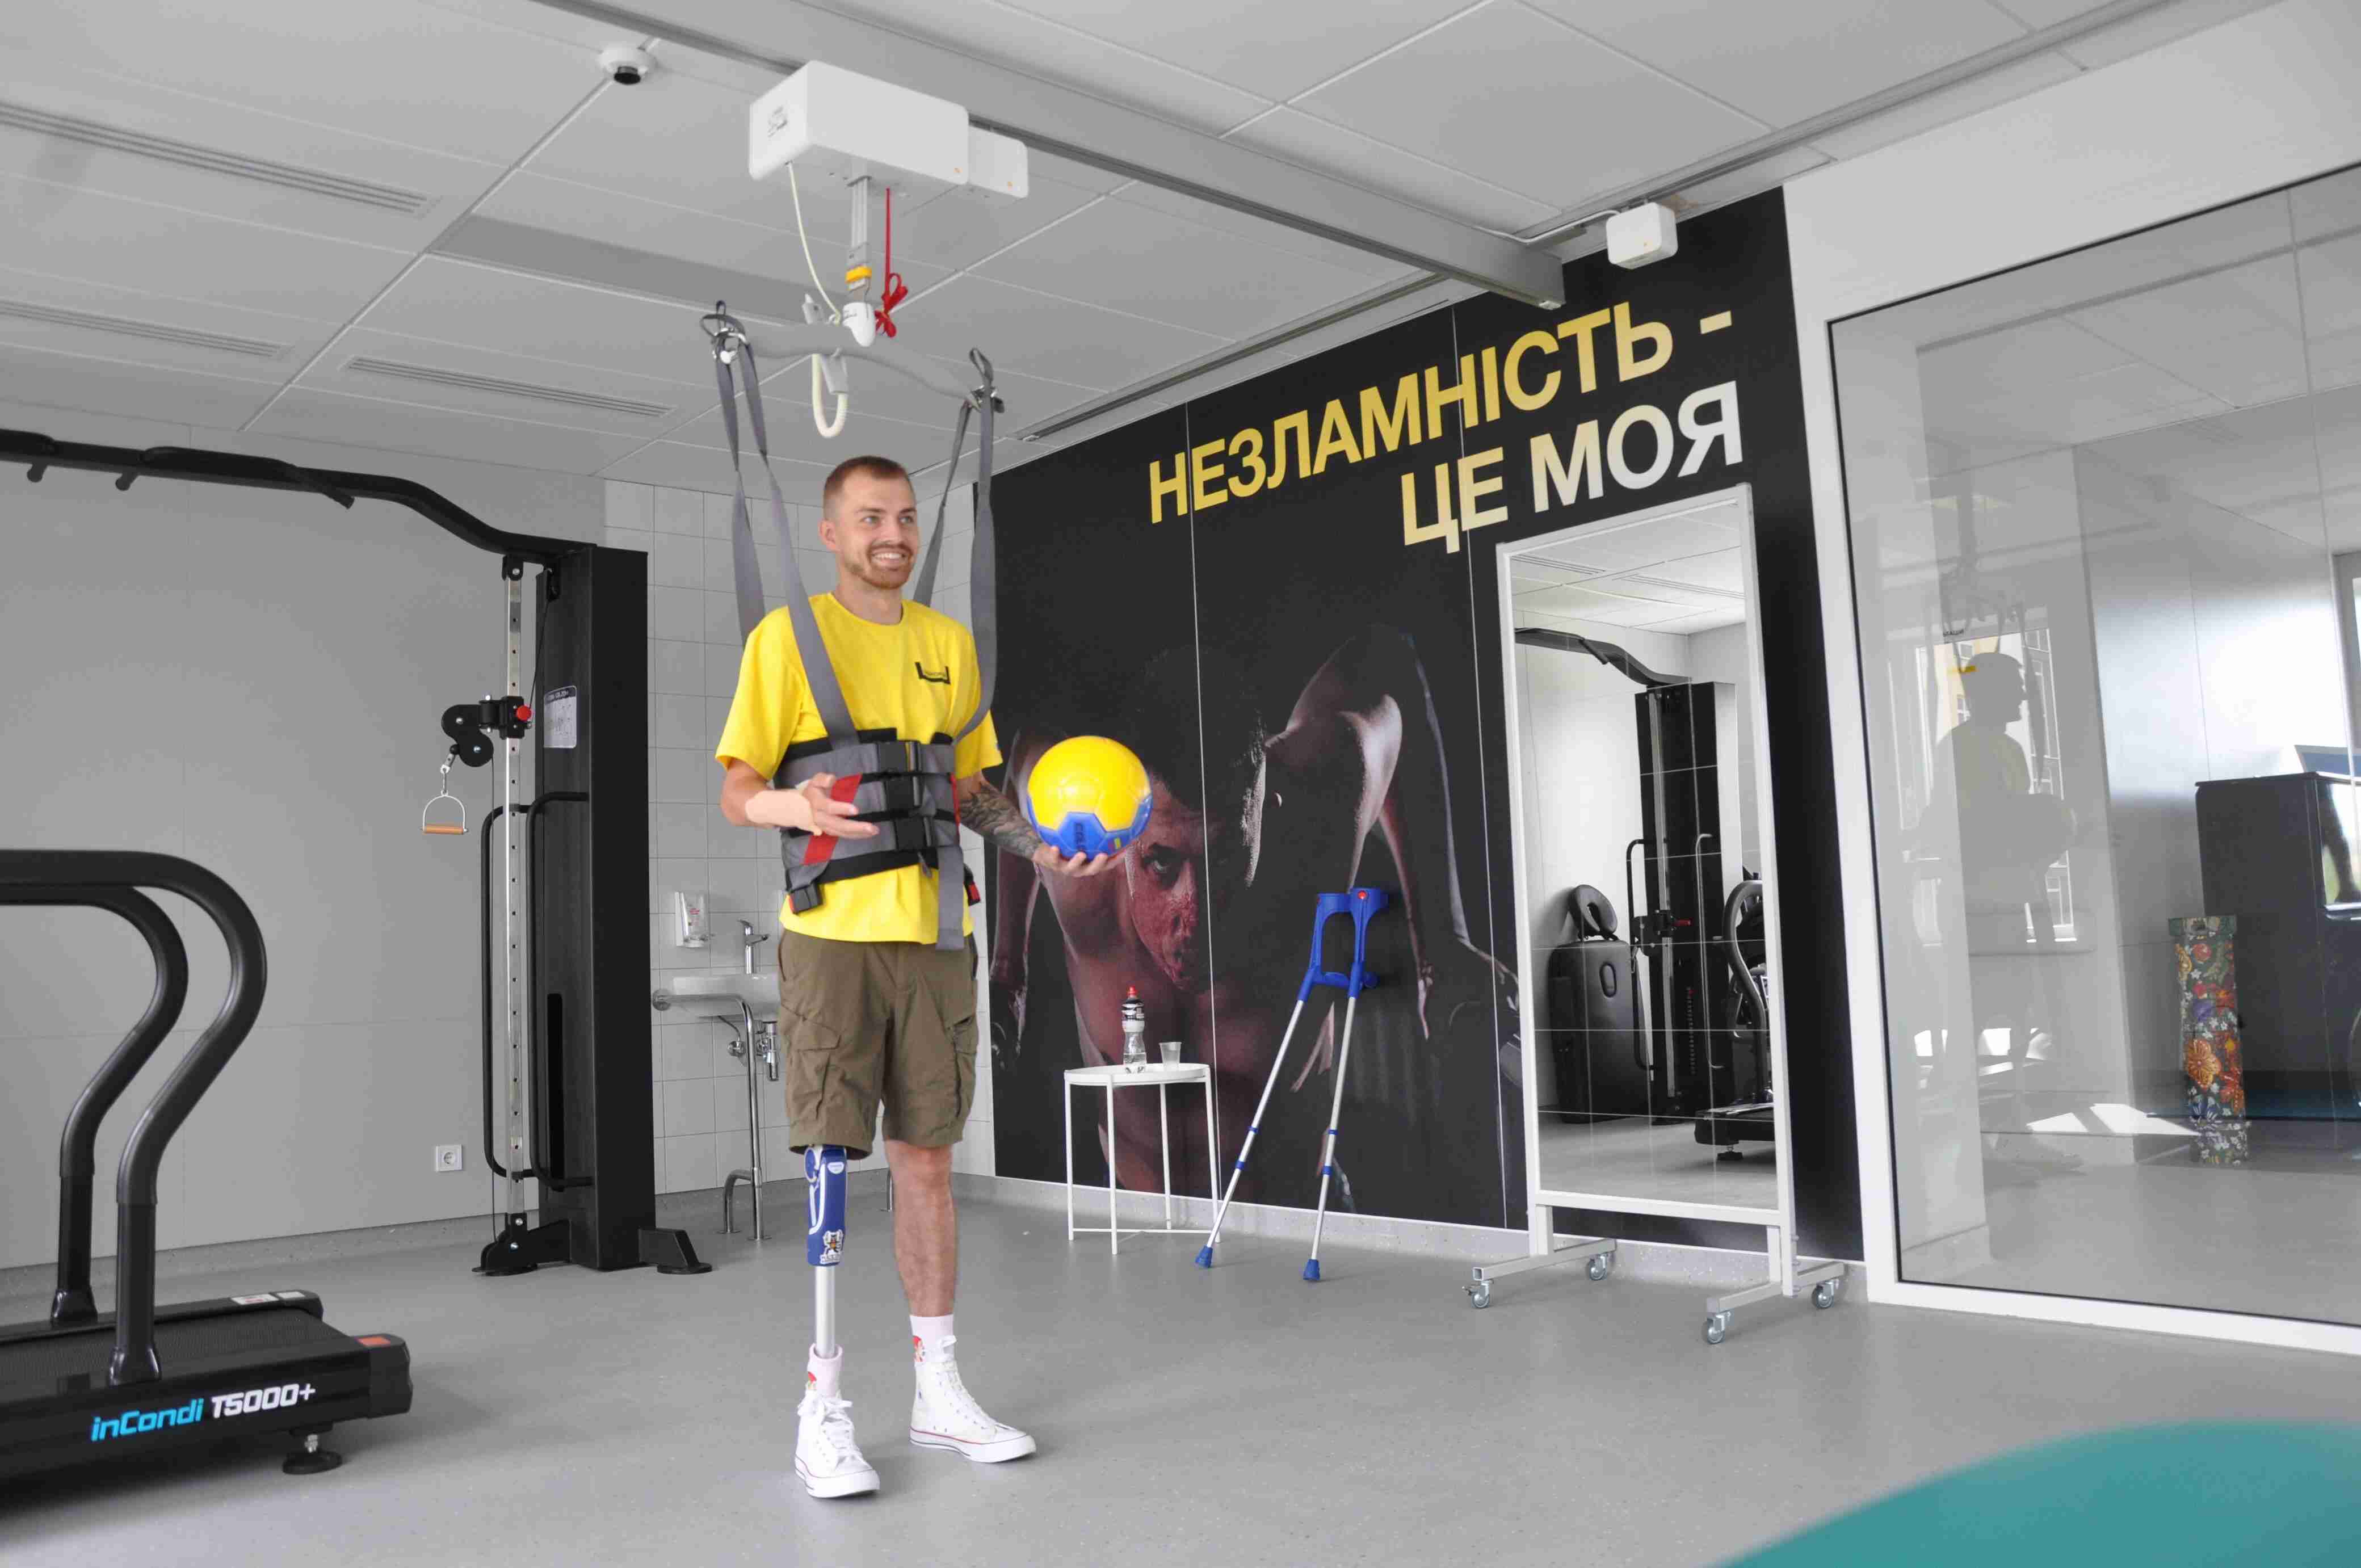 Перебував 11 днів у комі: львівські лікарі повернули здатність ходити важкопораненому парамедику (ФОТО)